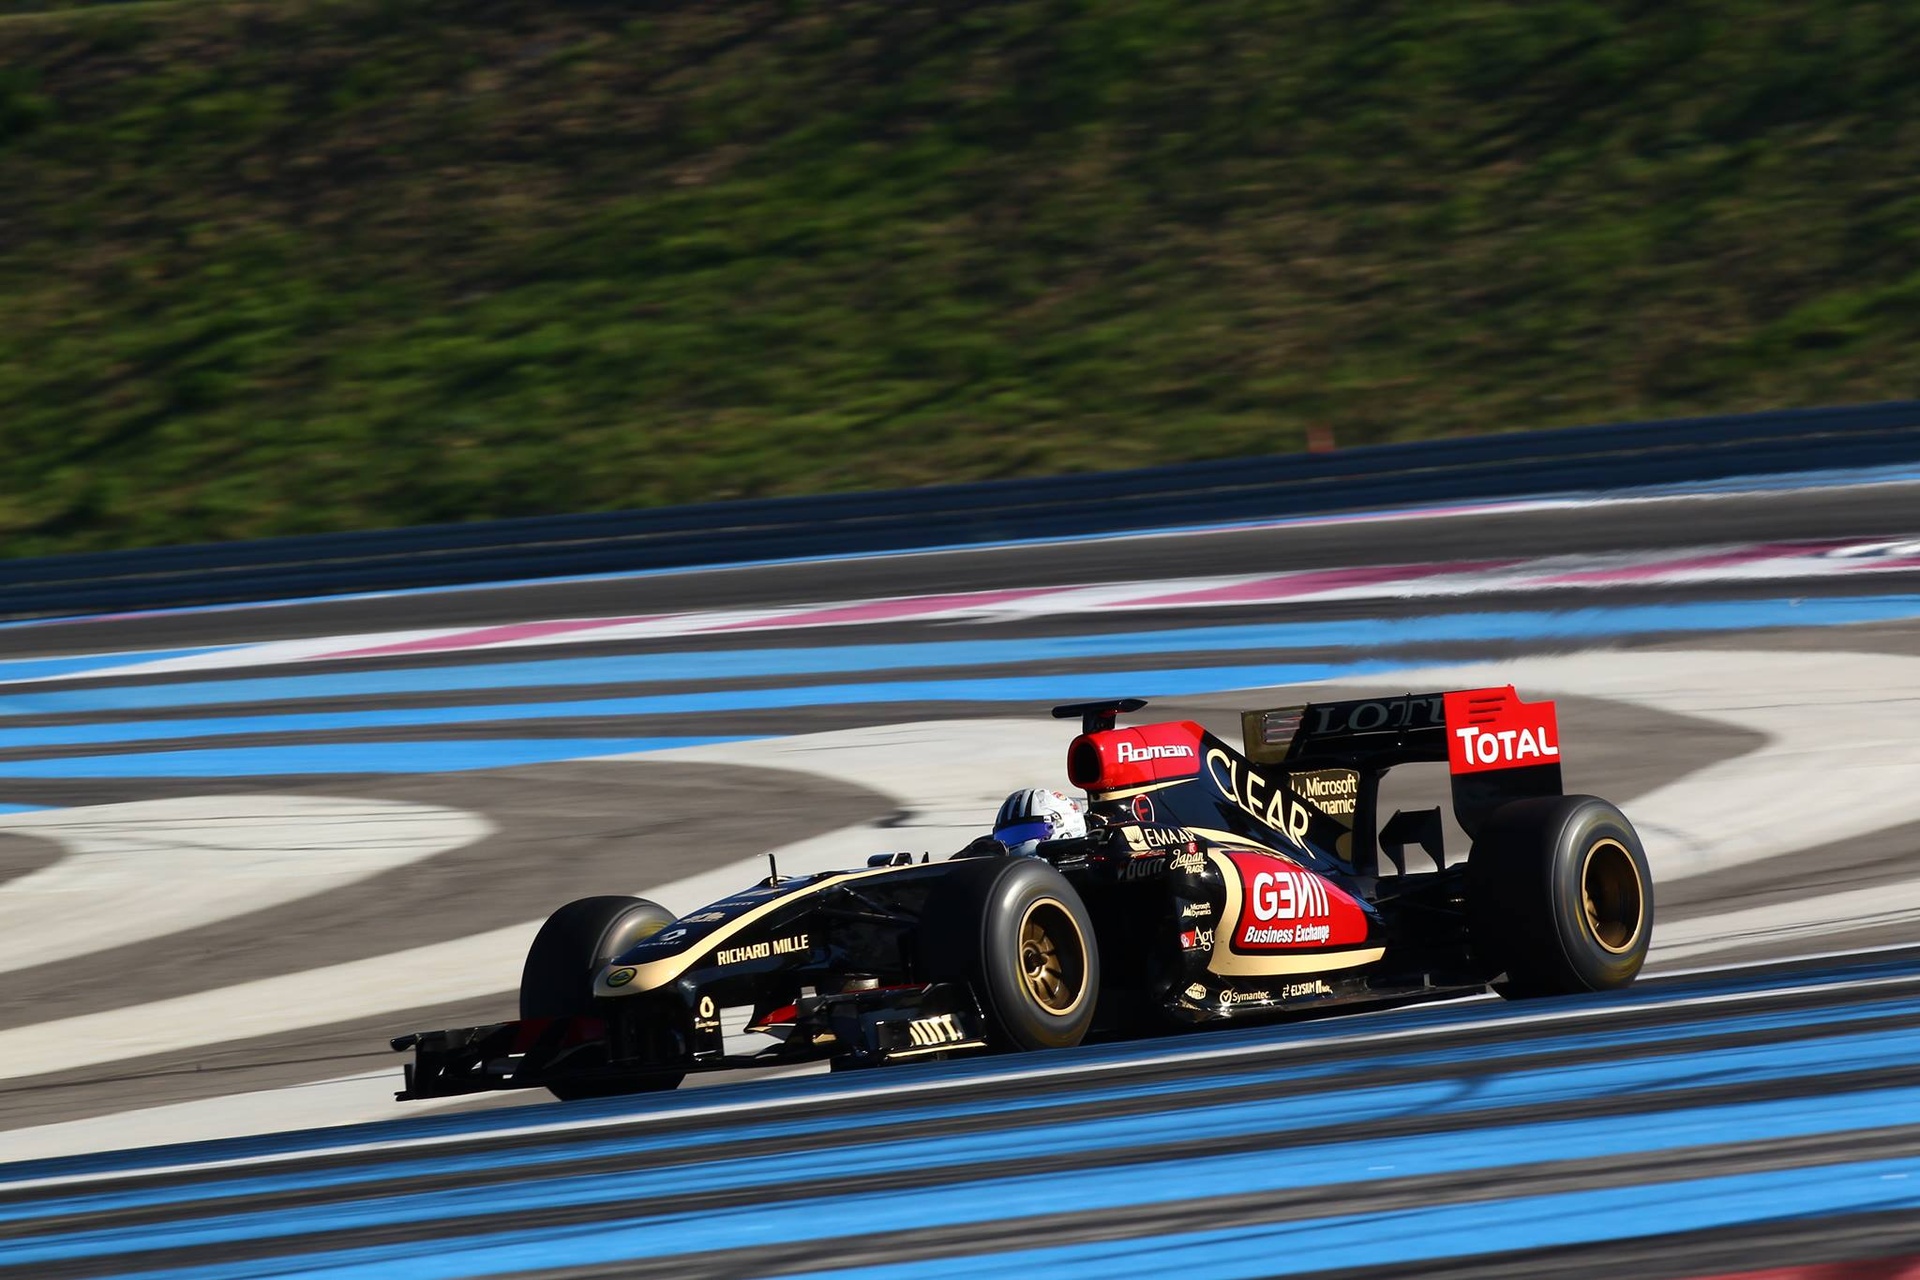 Alex Fontana: 30. septembra 2013., vozač iz Ticina izveo je test sa Formulom 1 Lotus-Renault na francuskoj stazi Paul Ricard